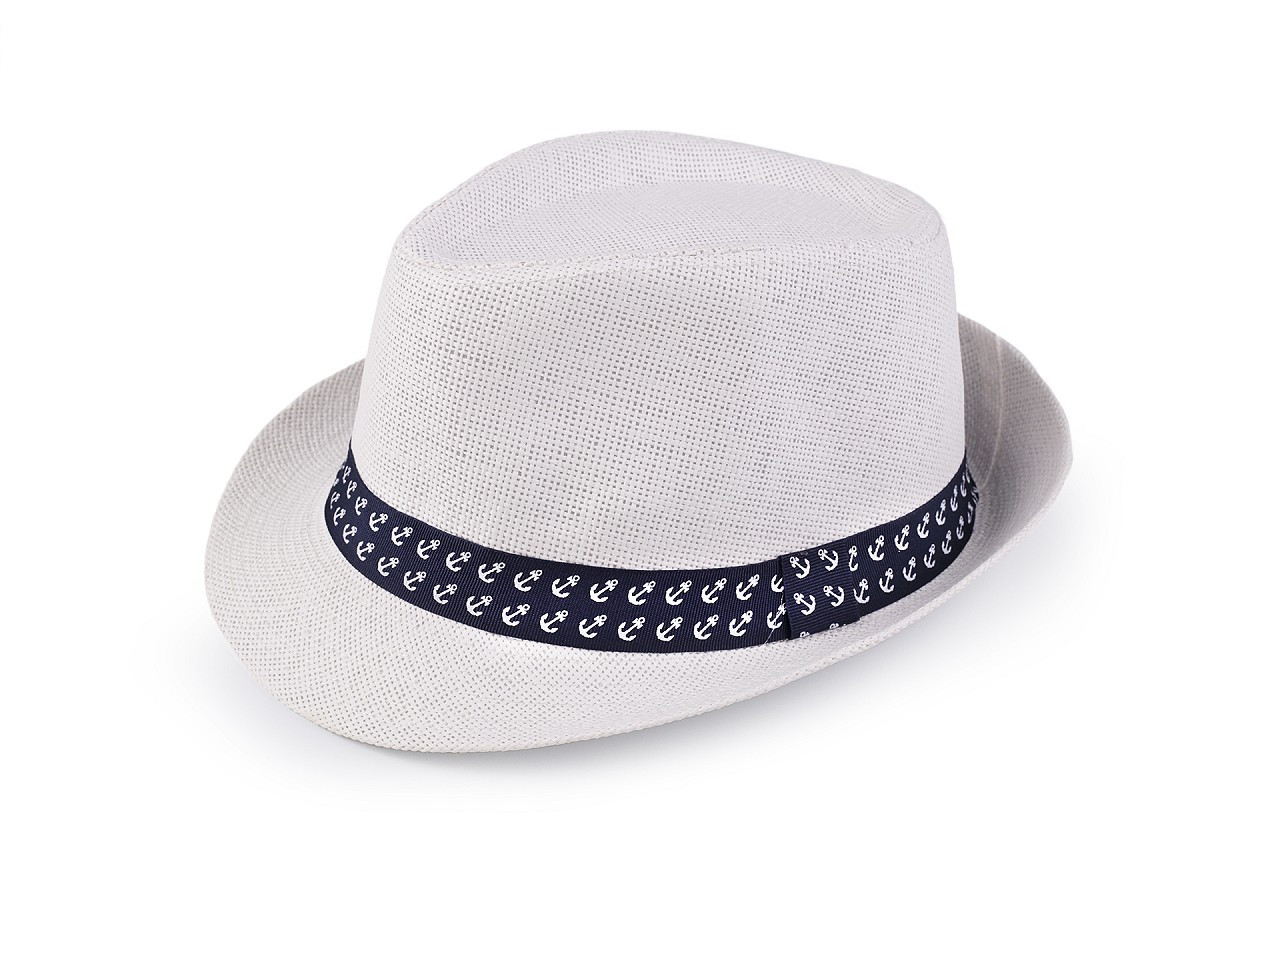 Dětský letní klobouk / slamák, barva 5 (54 cm) bílá